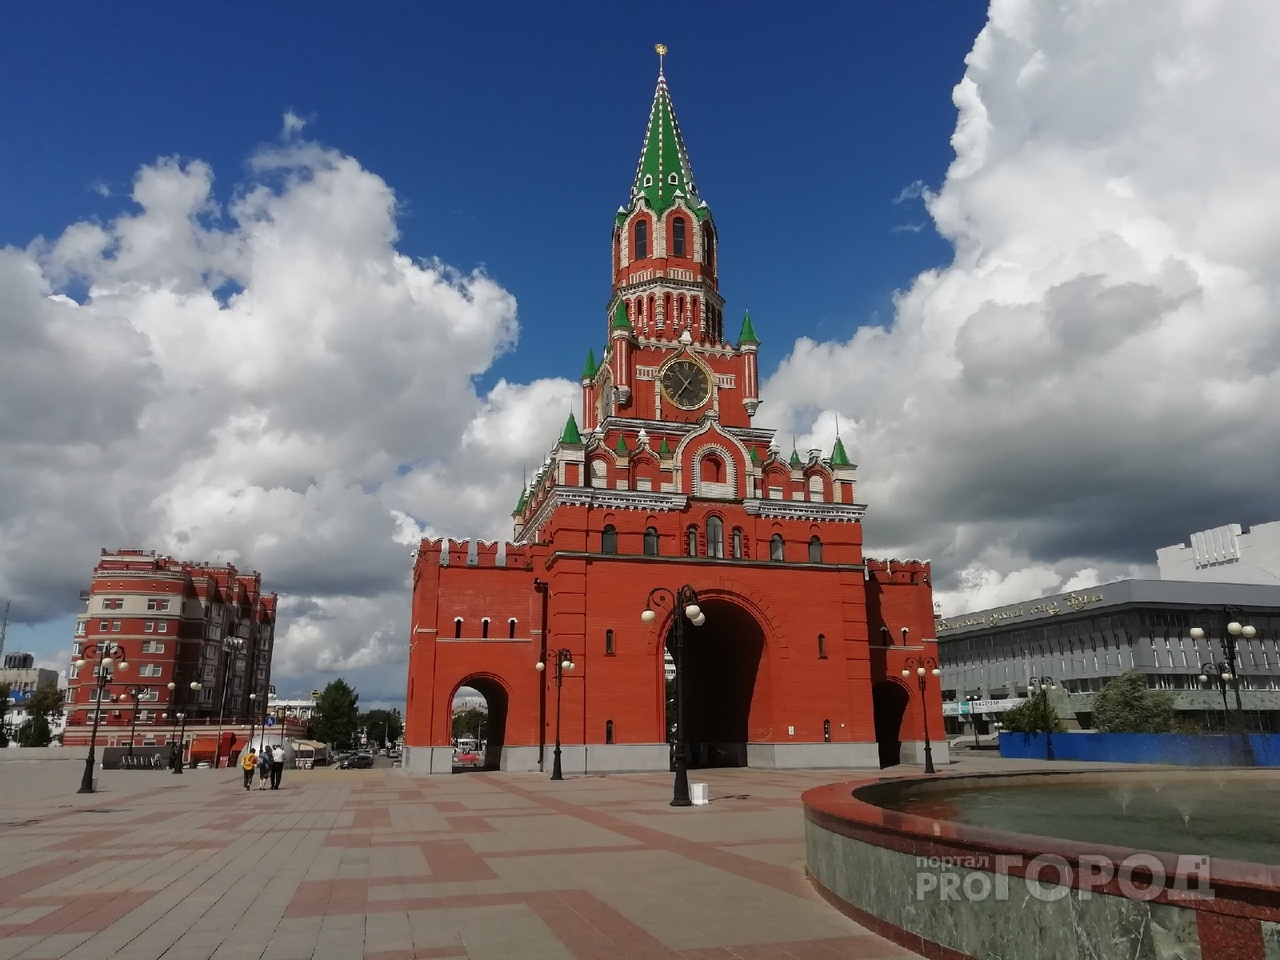 Йошкар-Ола попала в рейтинг безопасных городов России